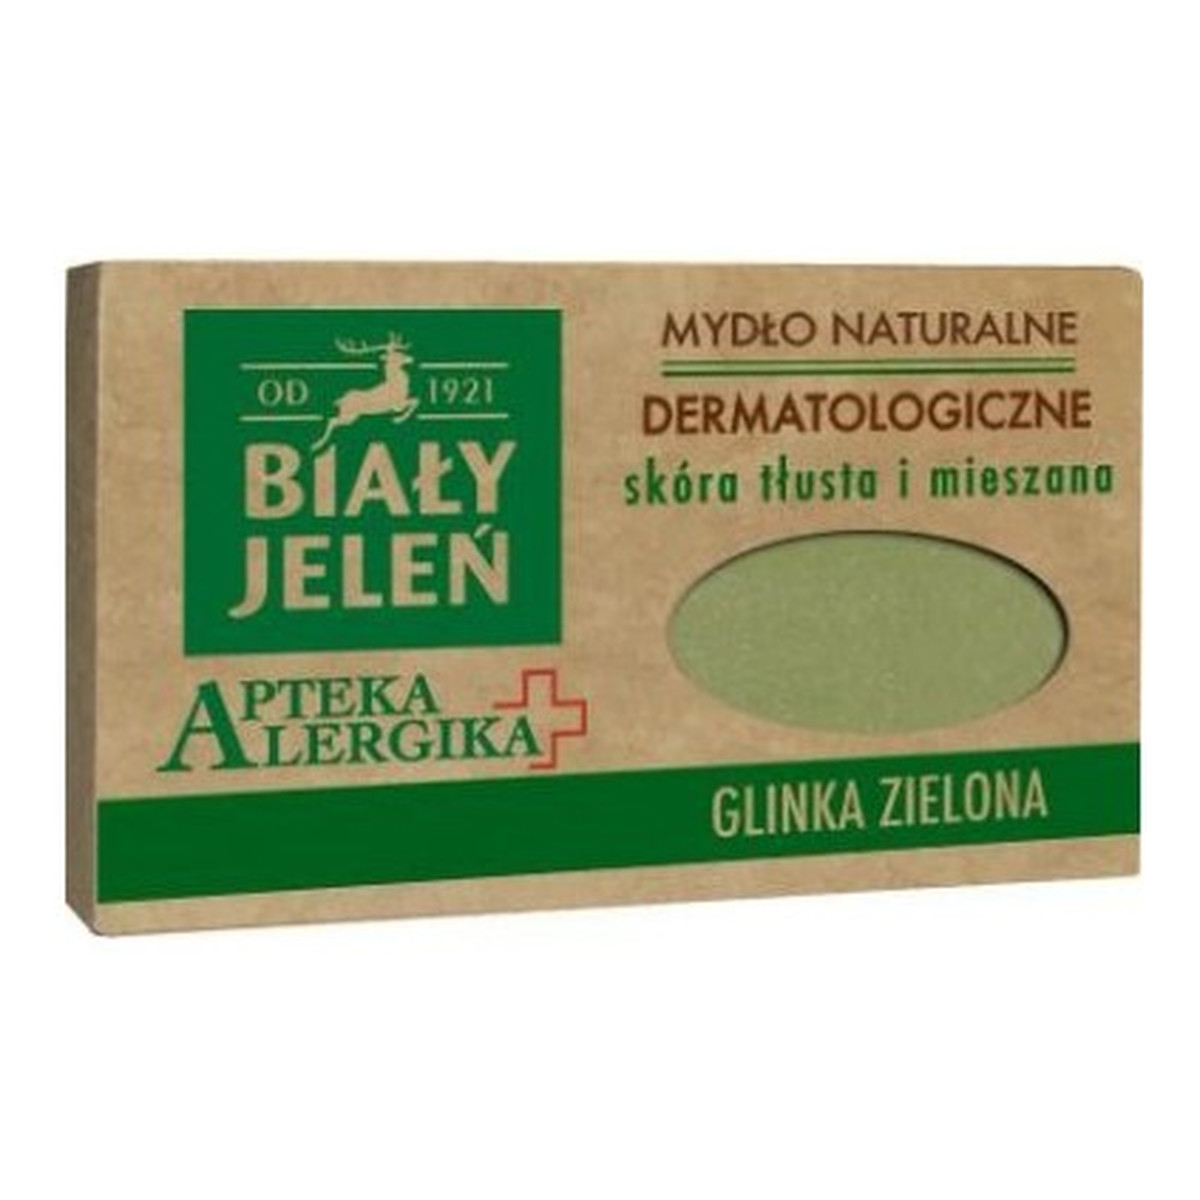 Biały Jeleń Apteka Alergika Dermatologiczne mydło z glinką zieloną, cera tłusta i mieszana 125g